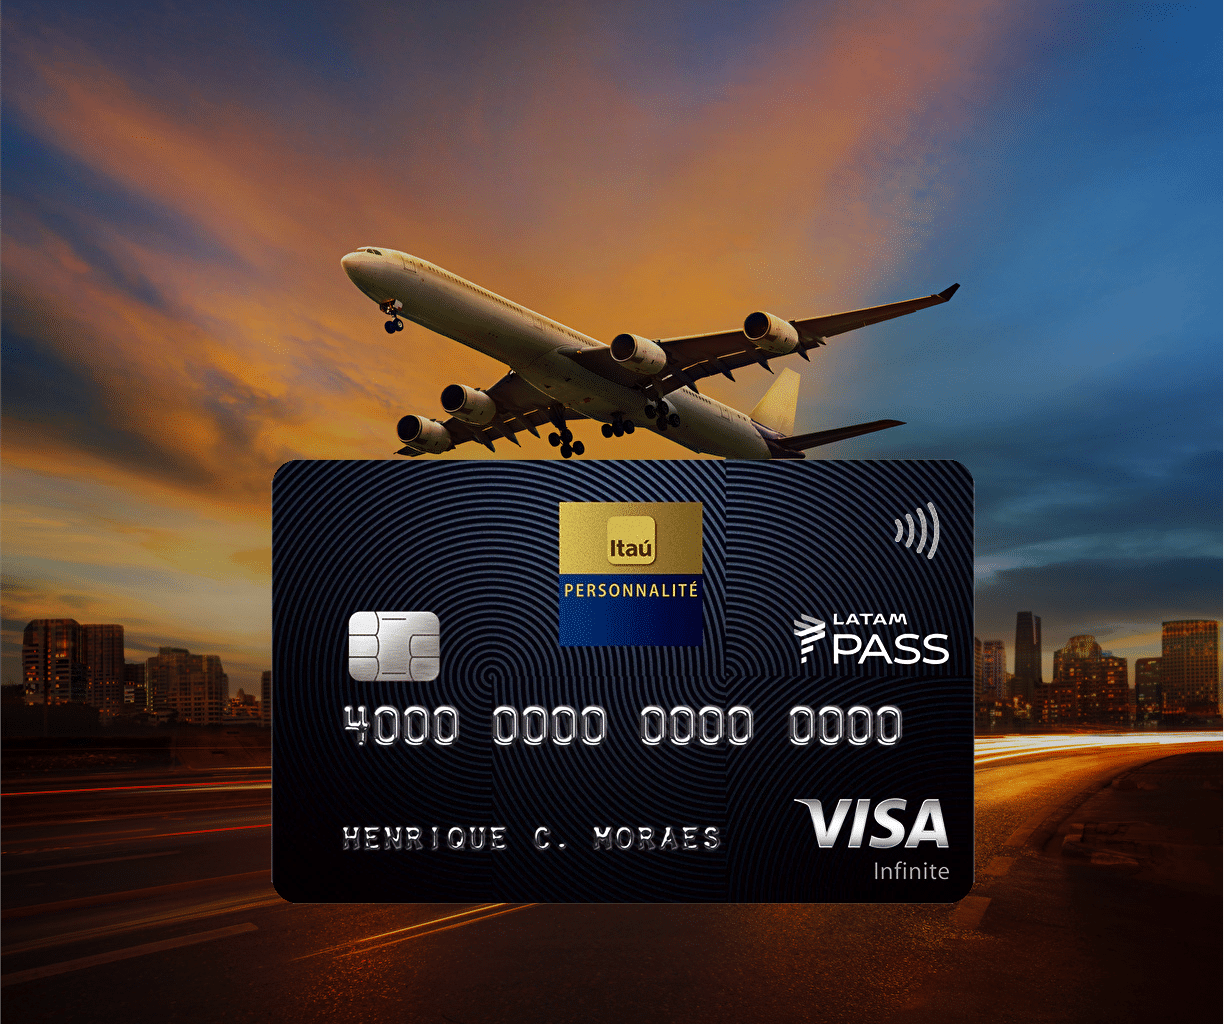 LATAM Pass Visa Infinite - Meu Crédito Digital